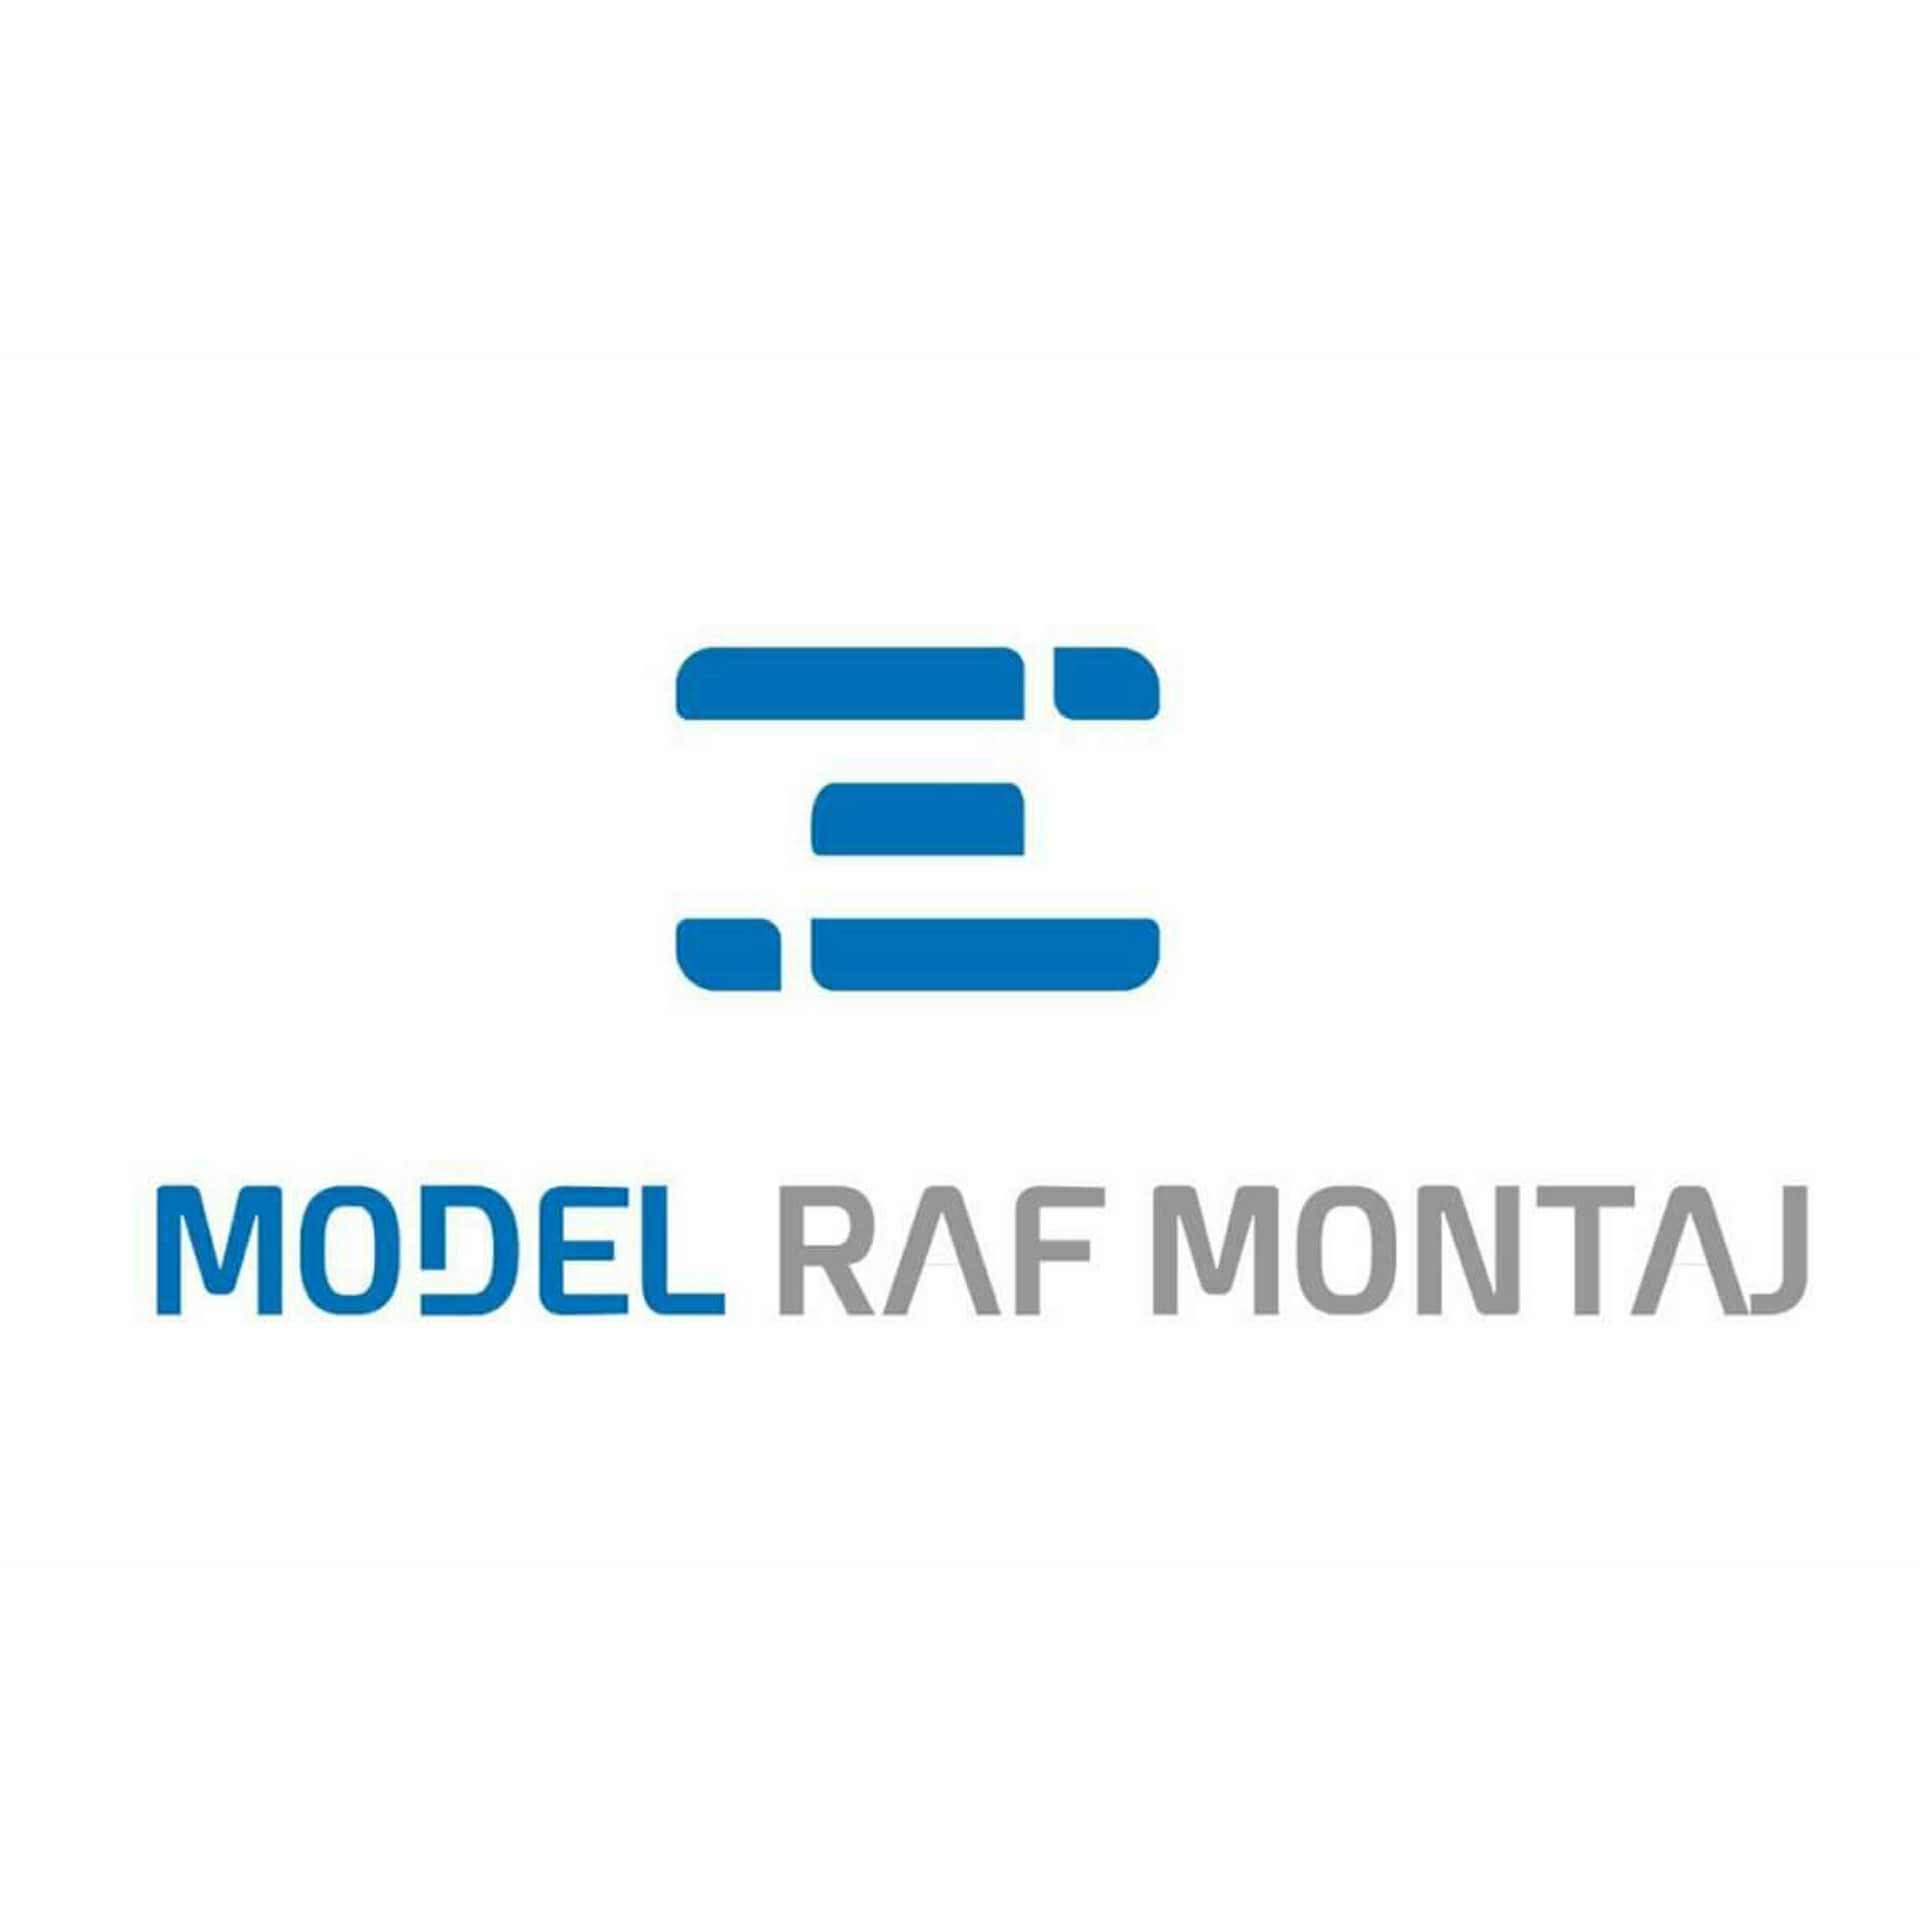 Model Raf Montaj